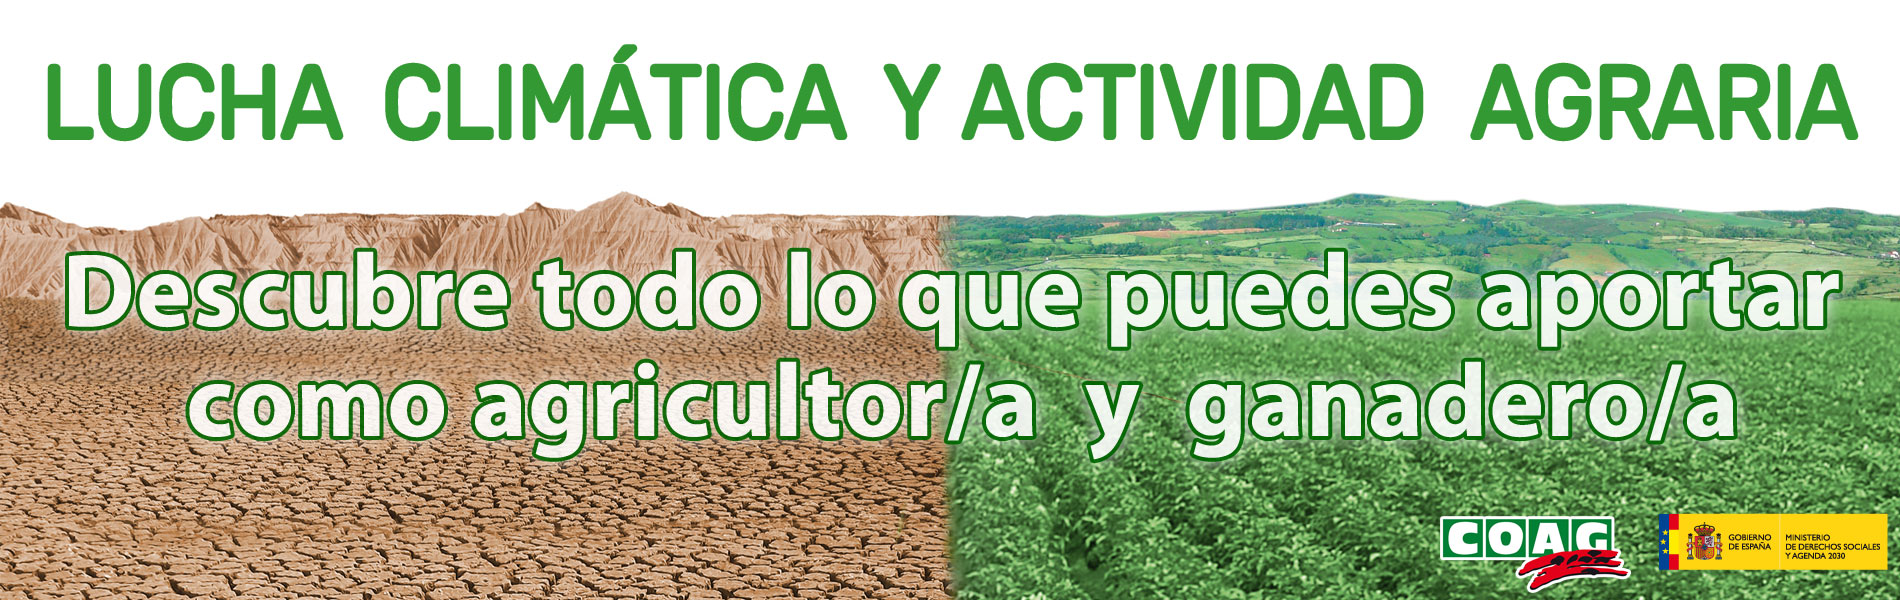 LUCHA CLIMÁTICA Y ACTIVIDAD AGRARIA